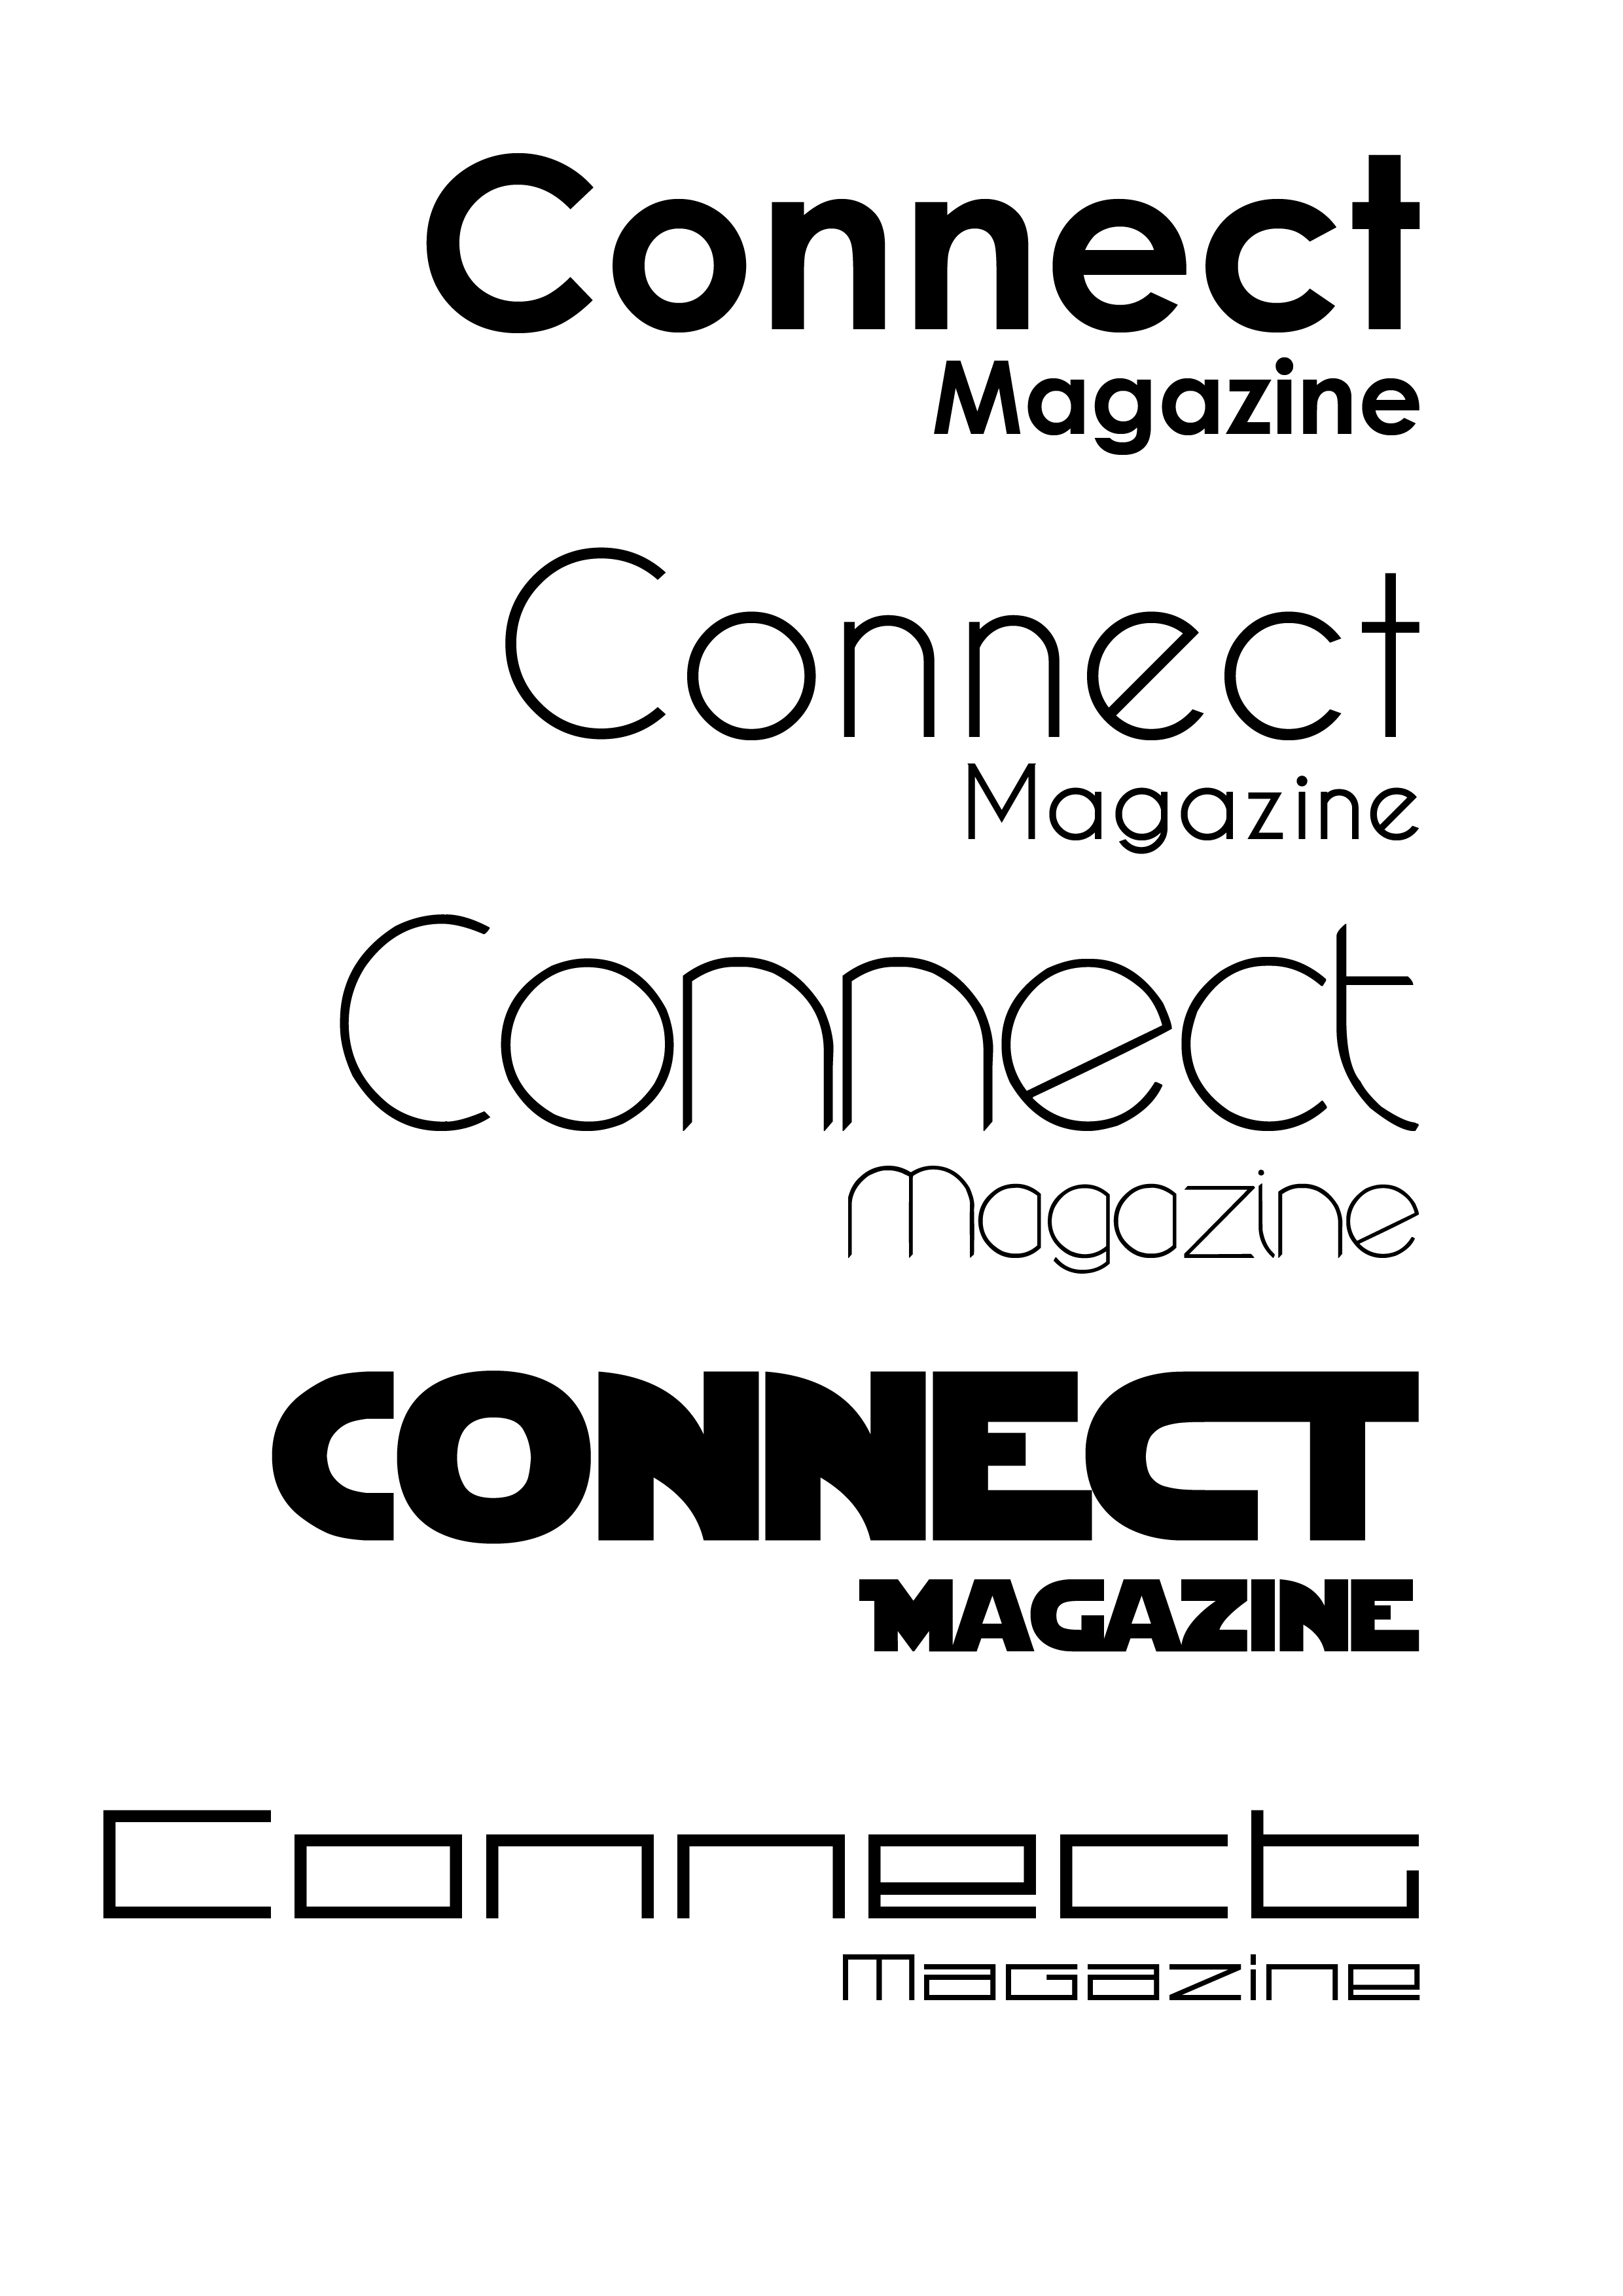 Font Logo Design